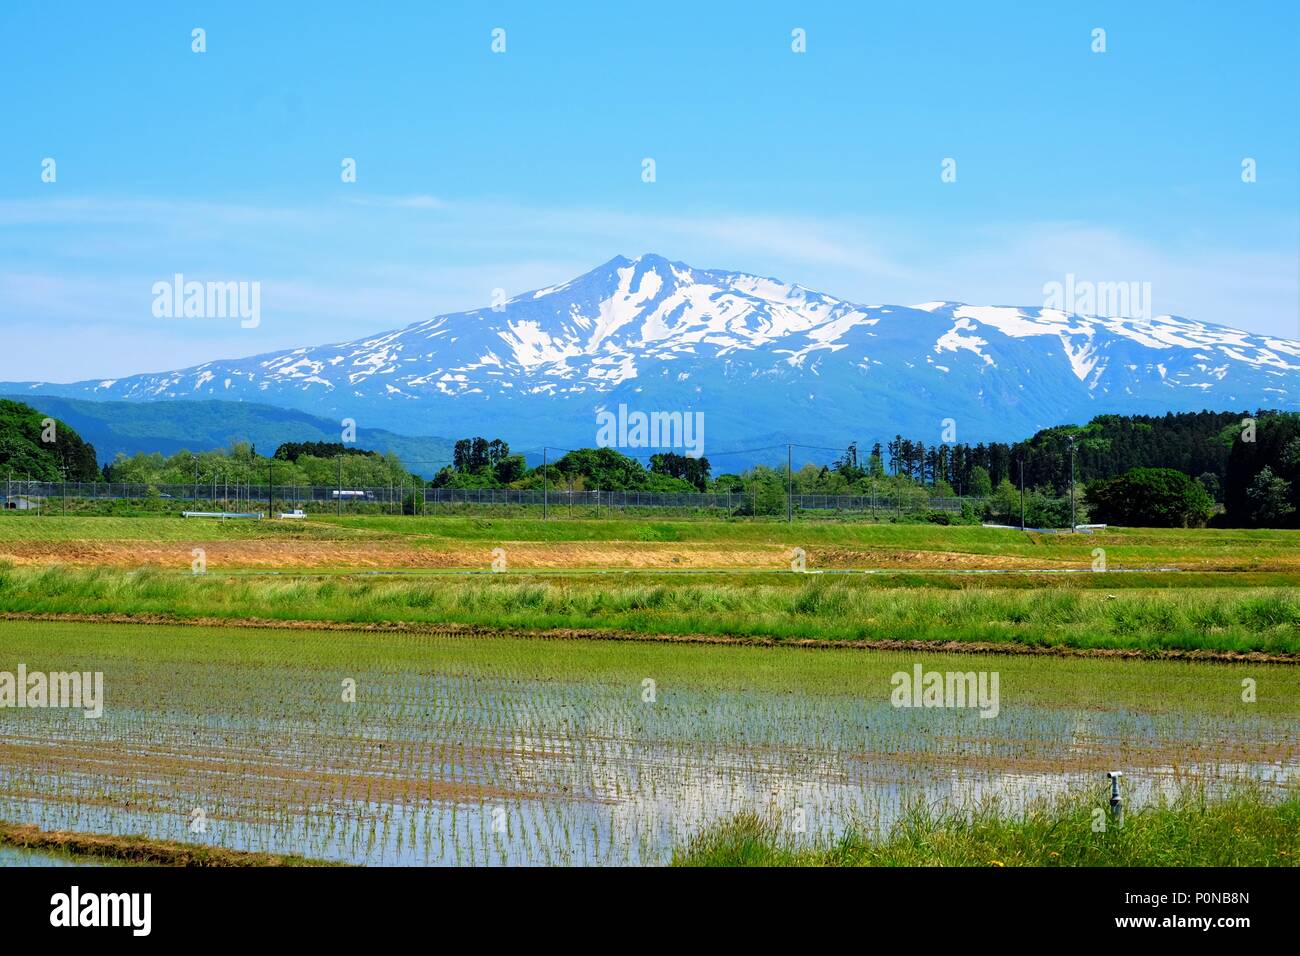 Mount Chōkai Stock Photo Alamy